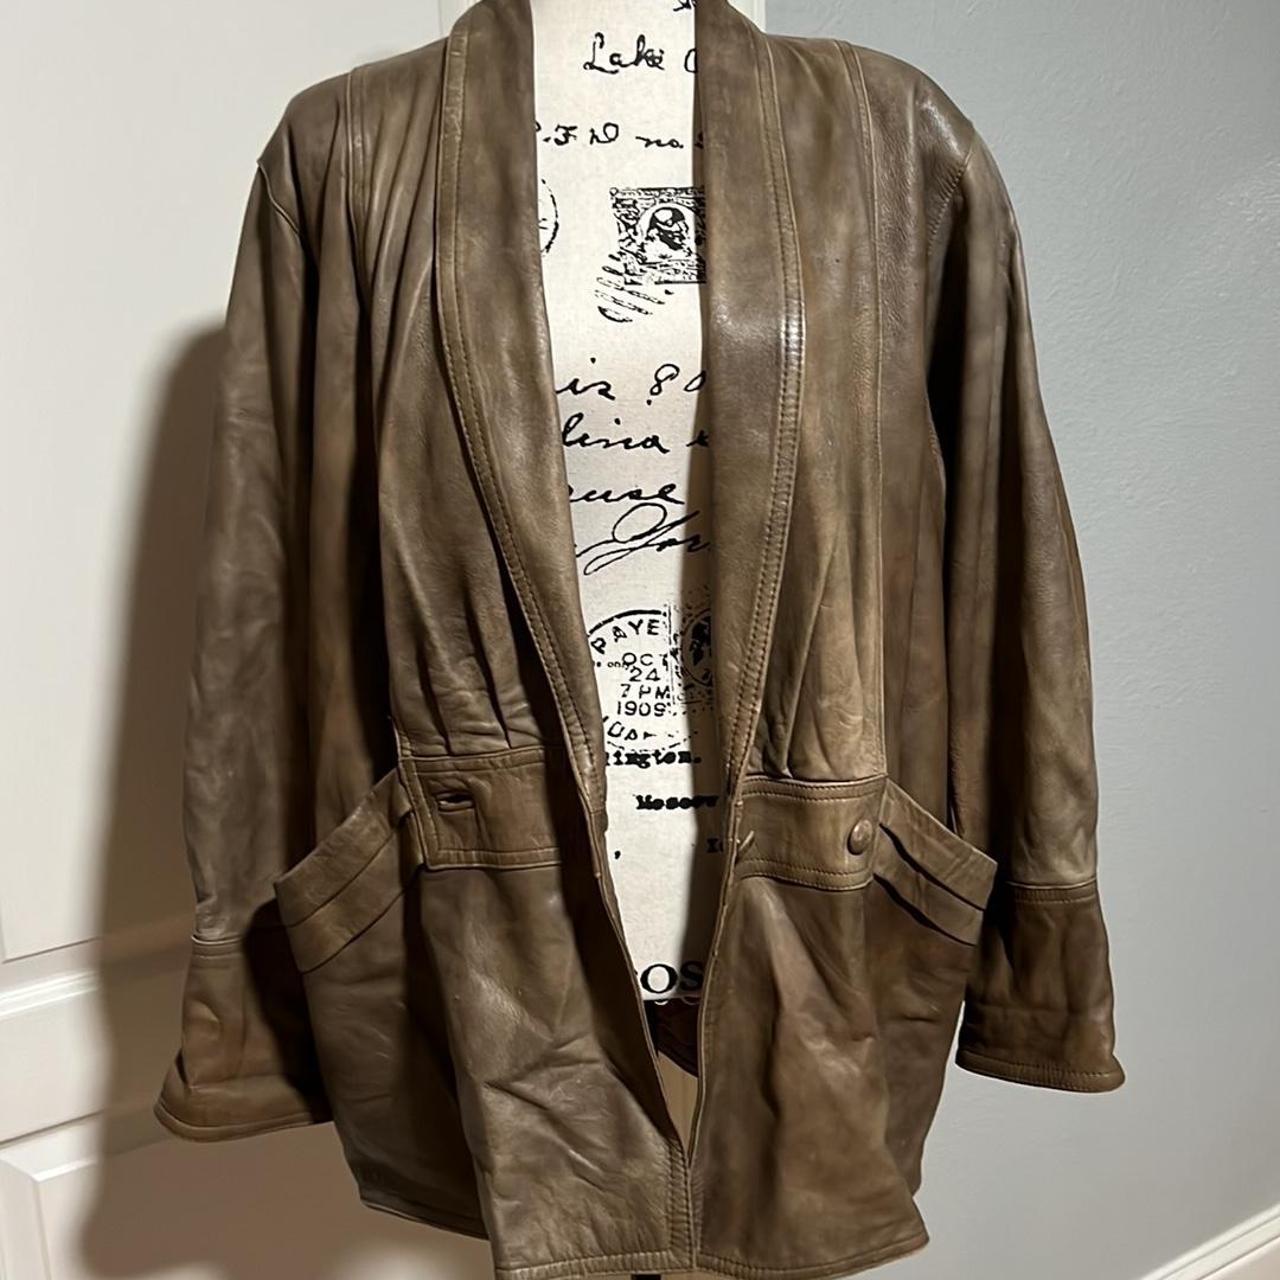 Vera Pelle Authentic Italian Leather Jacket , N. 883